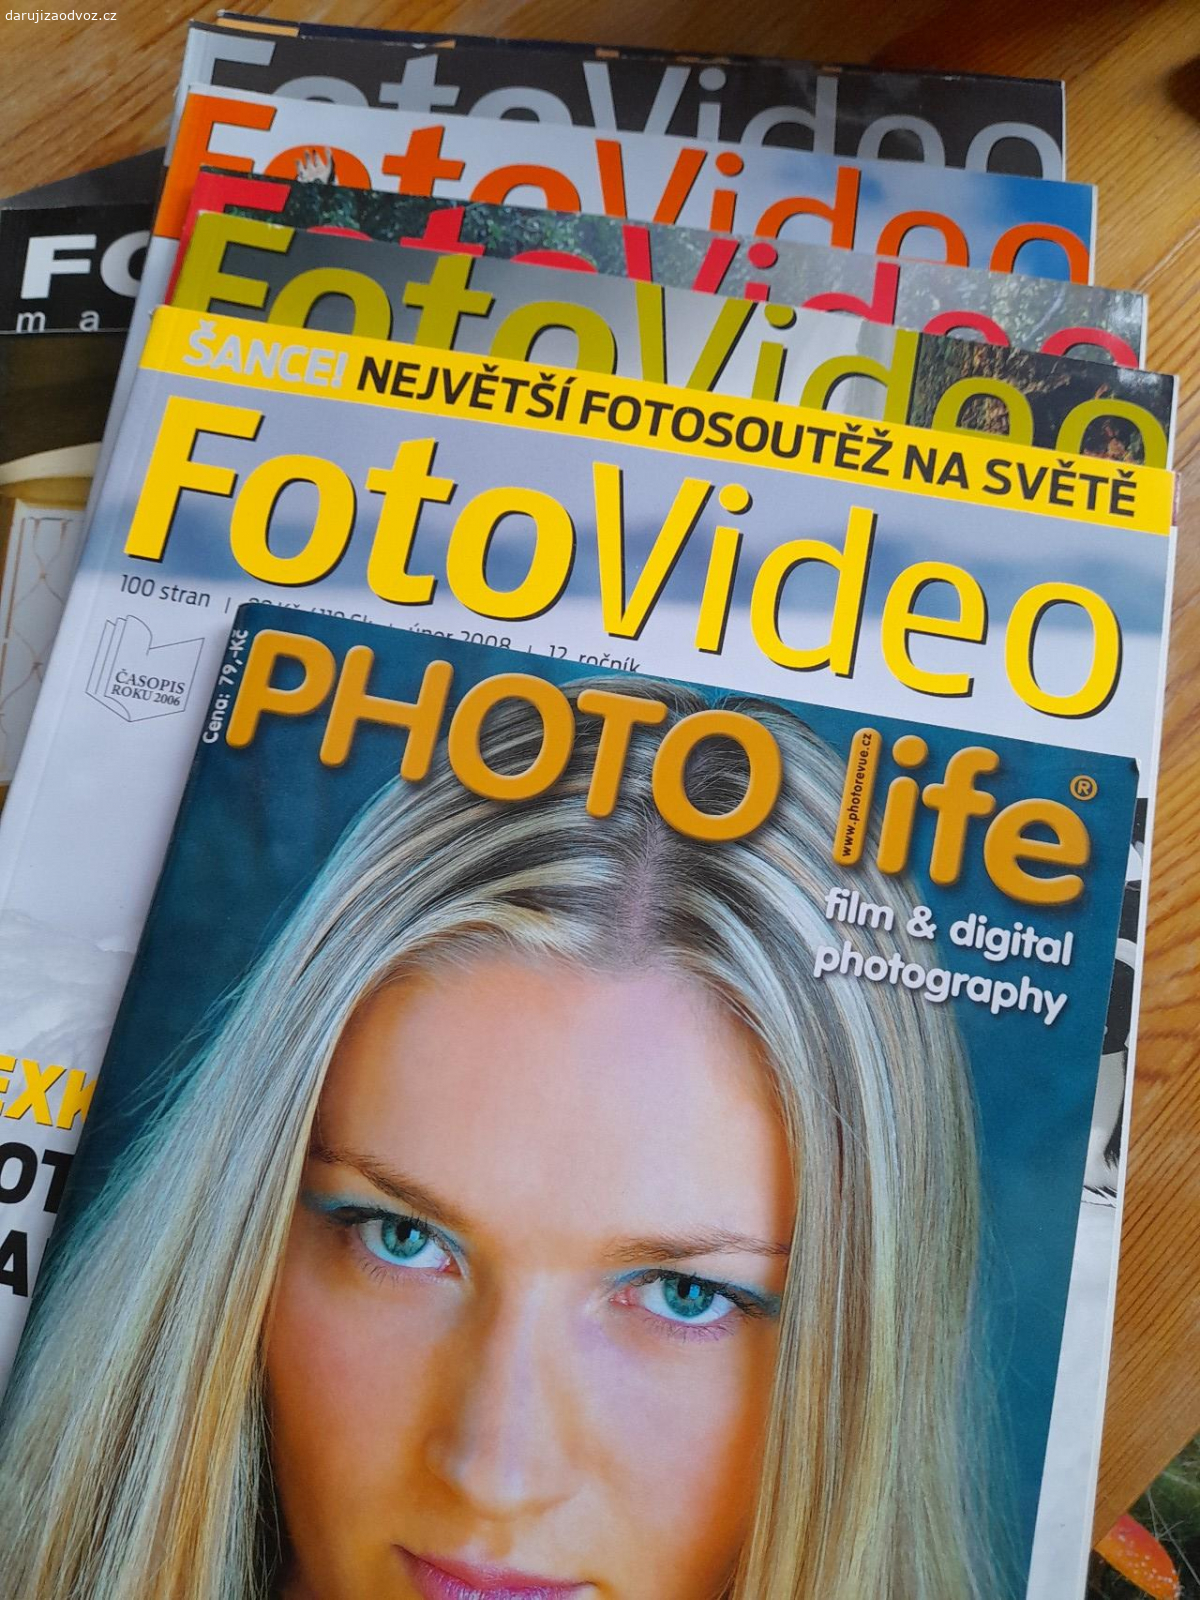 Časopisy fotografování. Photo life září 2006, 6x FotoVideo 2008-2009, 3x Fotografie 1996 a 2006.

Vyzvednutí ul. Hrdlořezská, Praha 9.